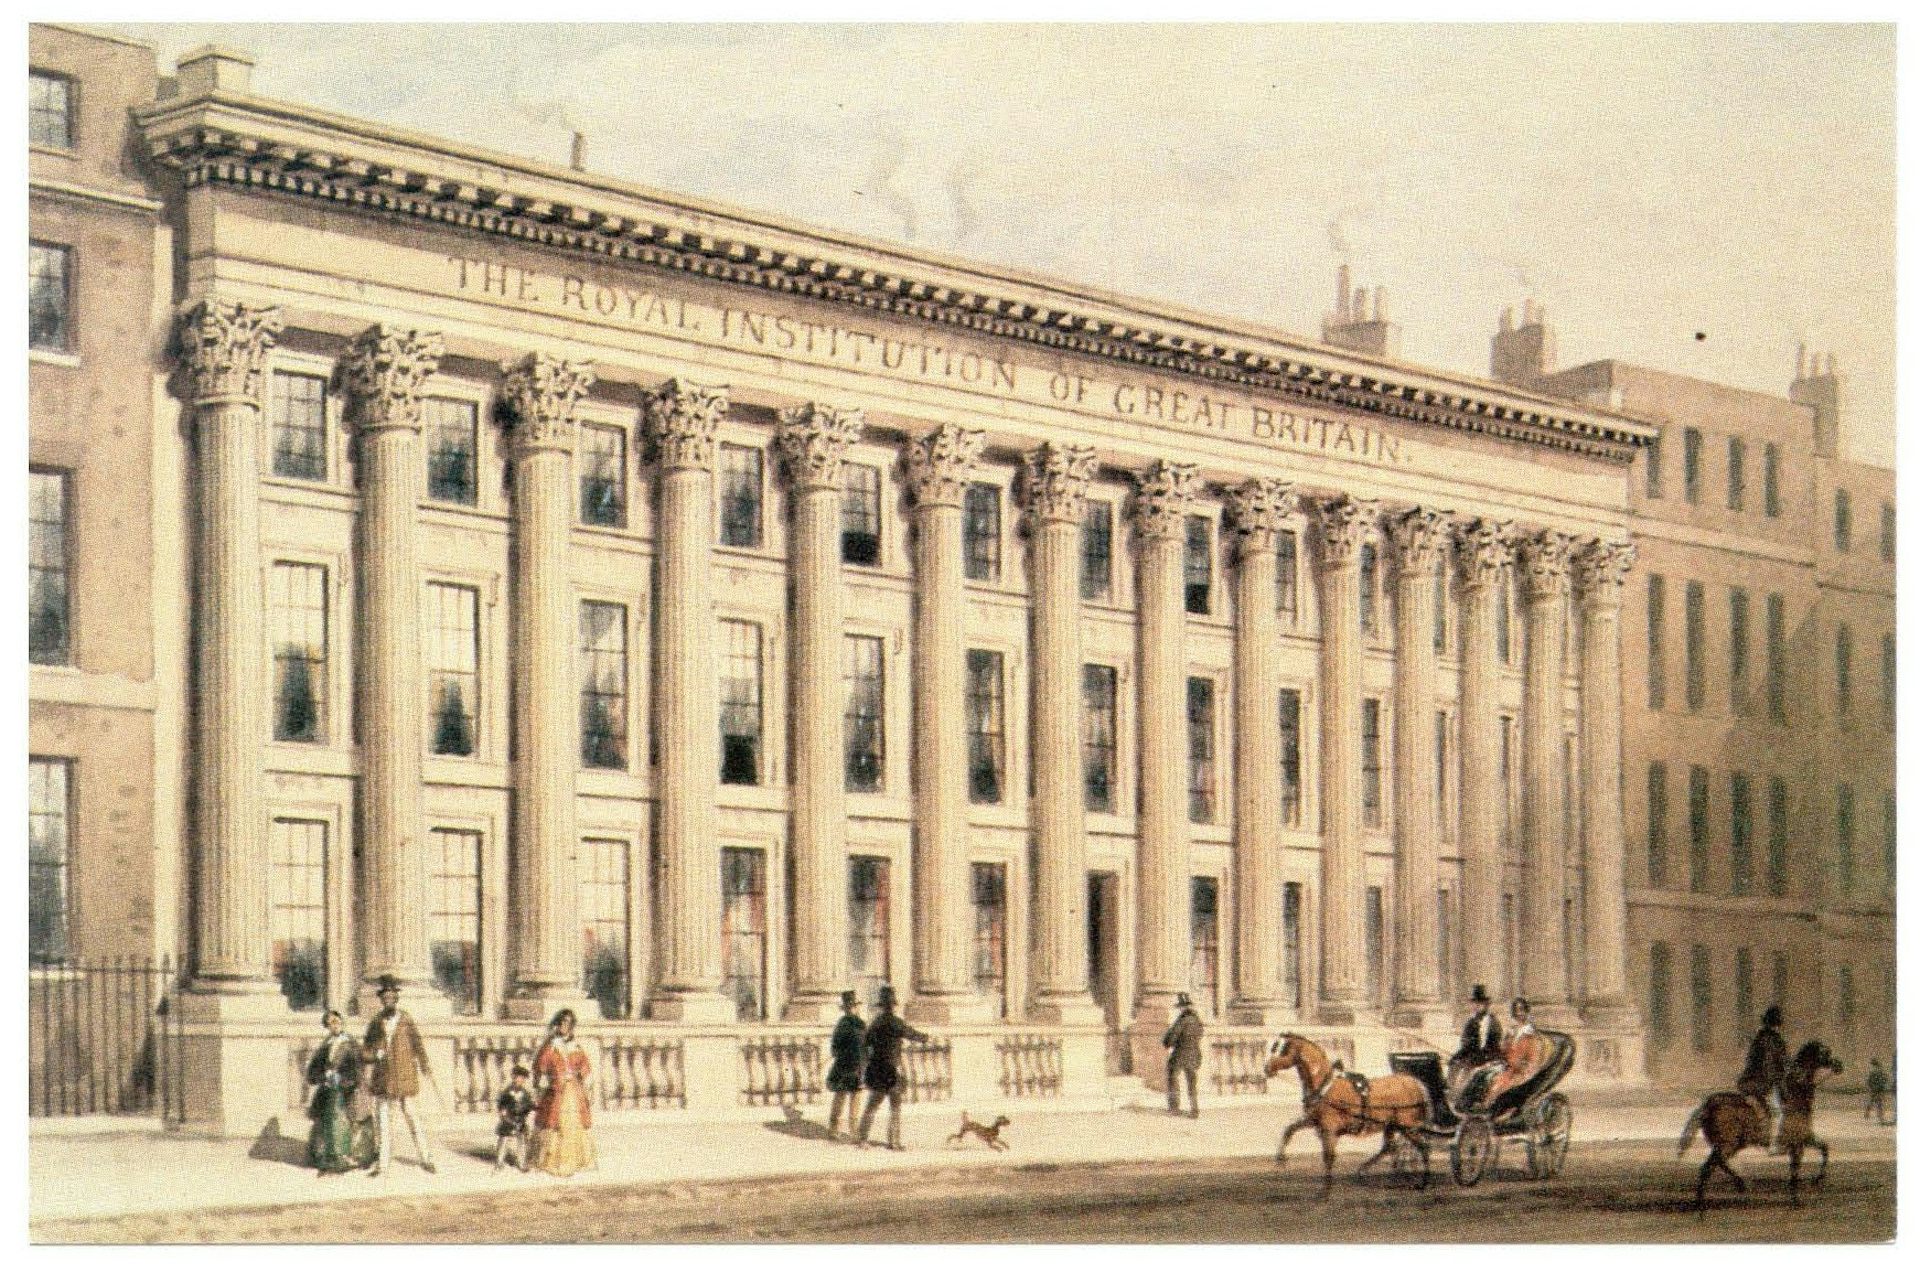  Pintura del edificio neoclásico de la Royal Institution en Londres.